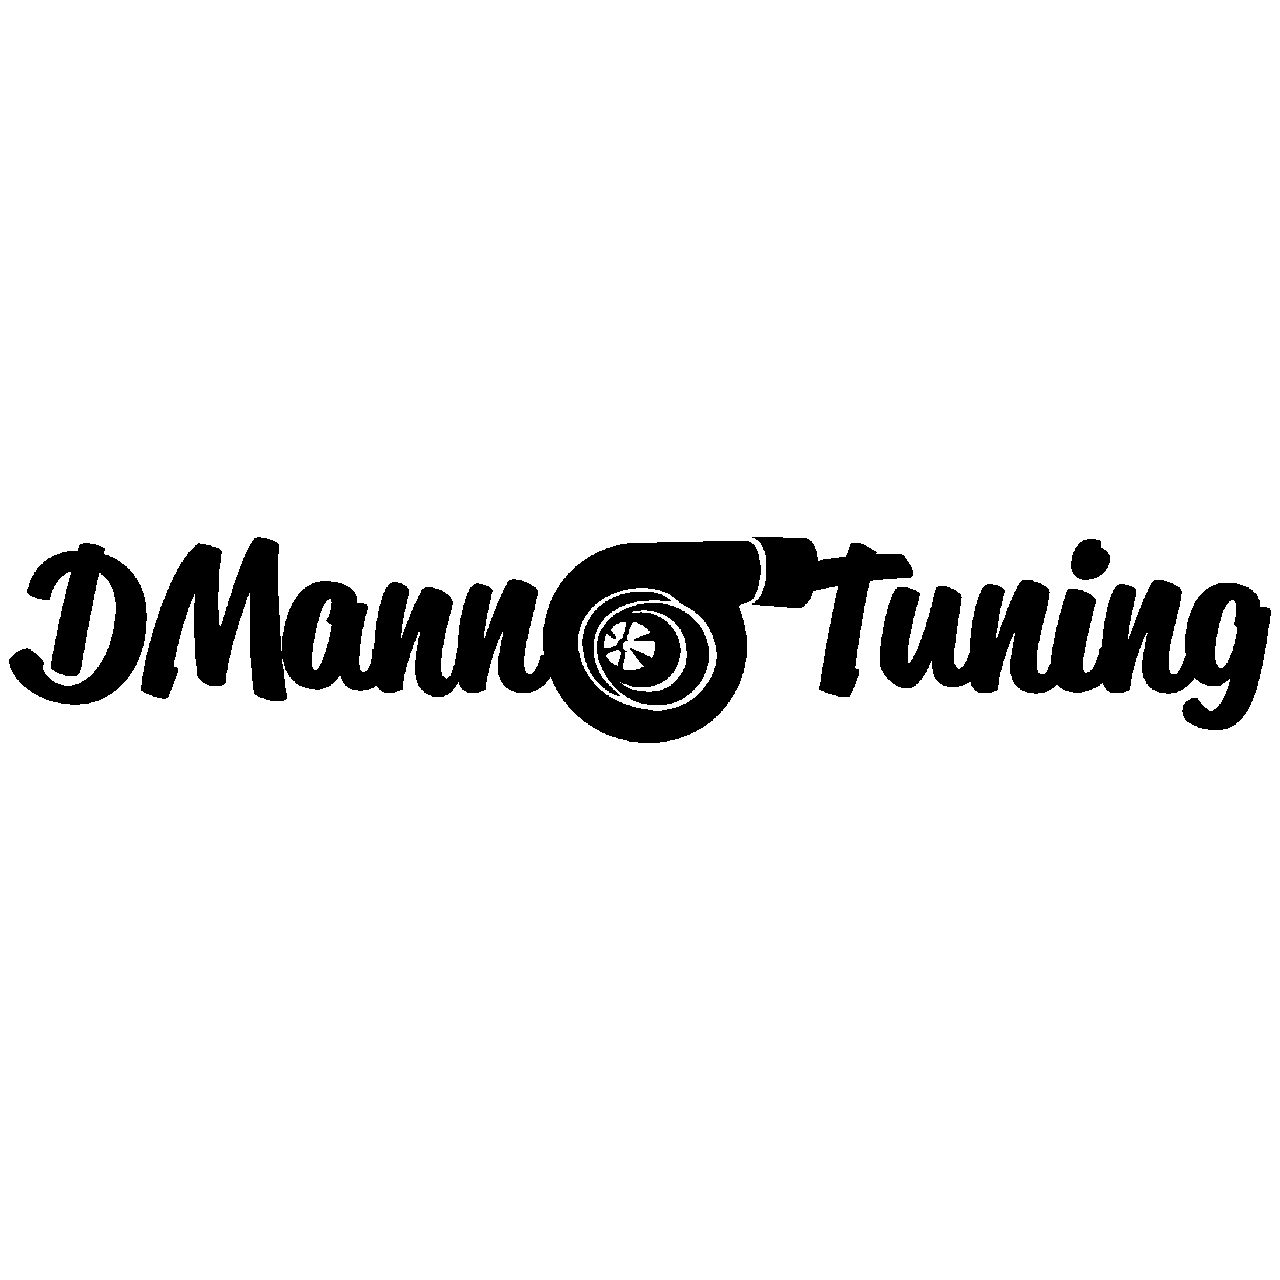 DMann Tuning Logo Decal